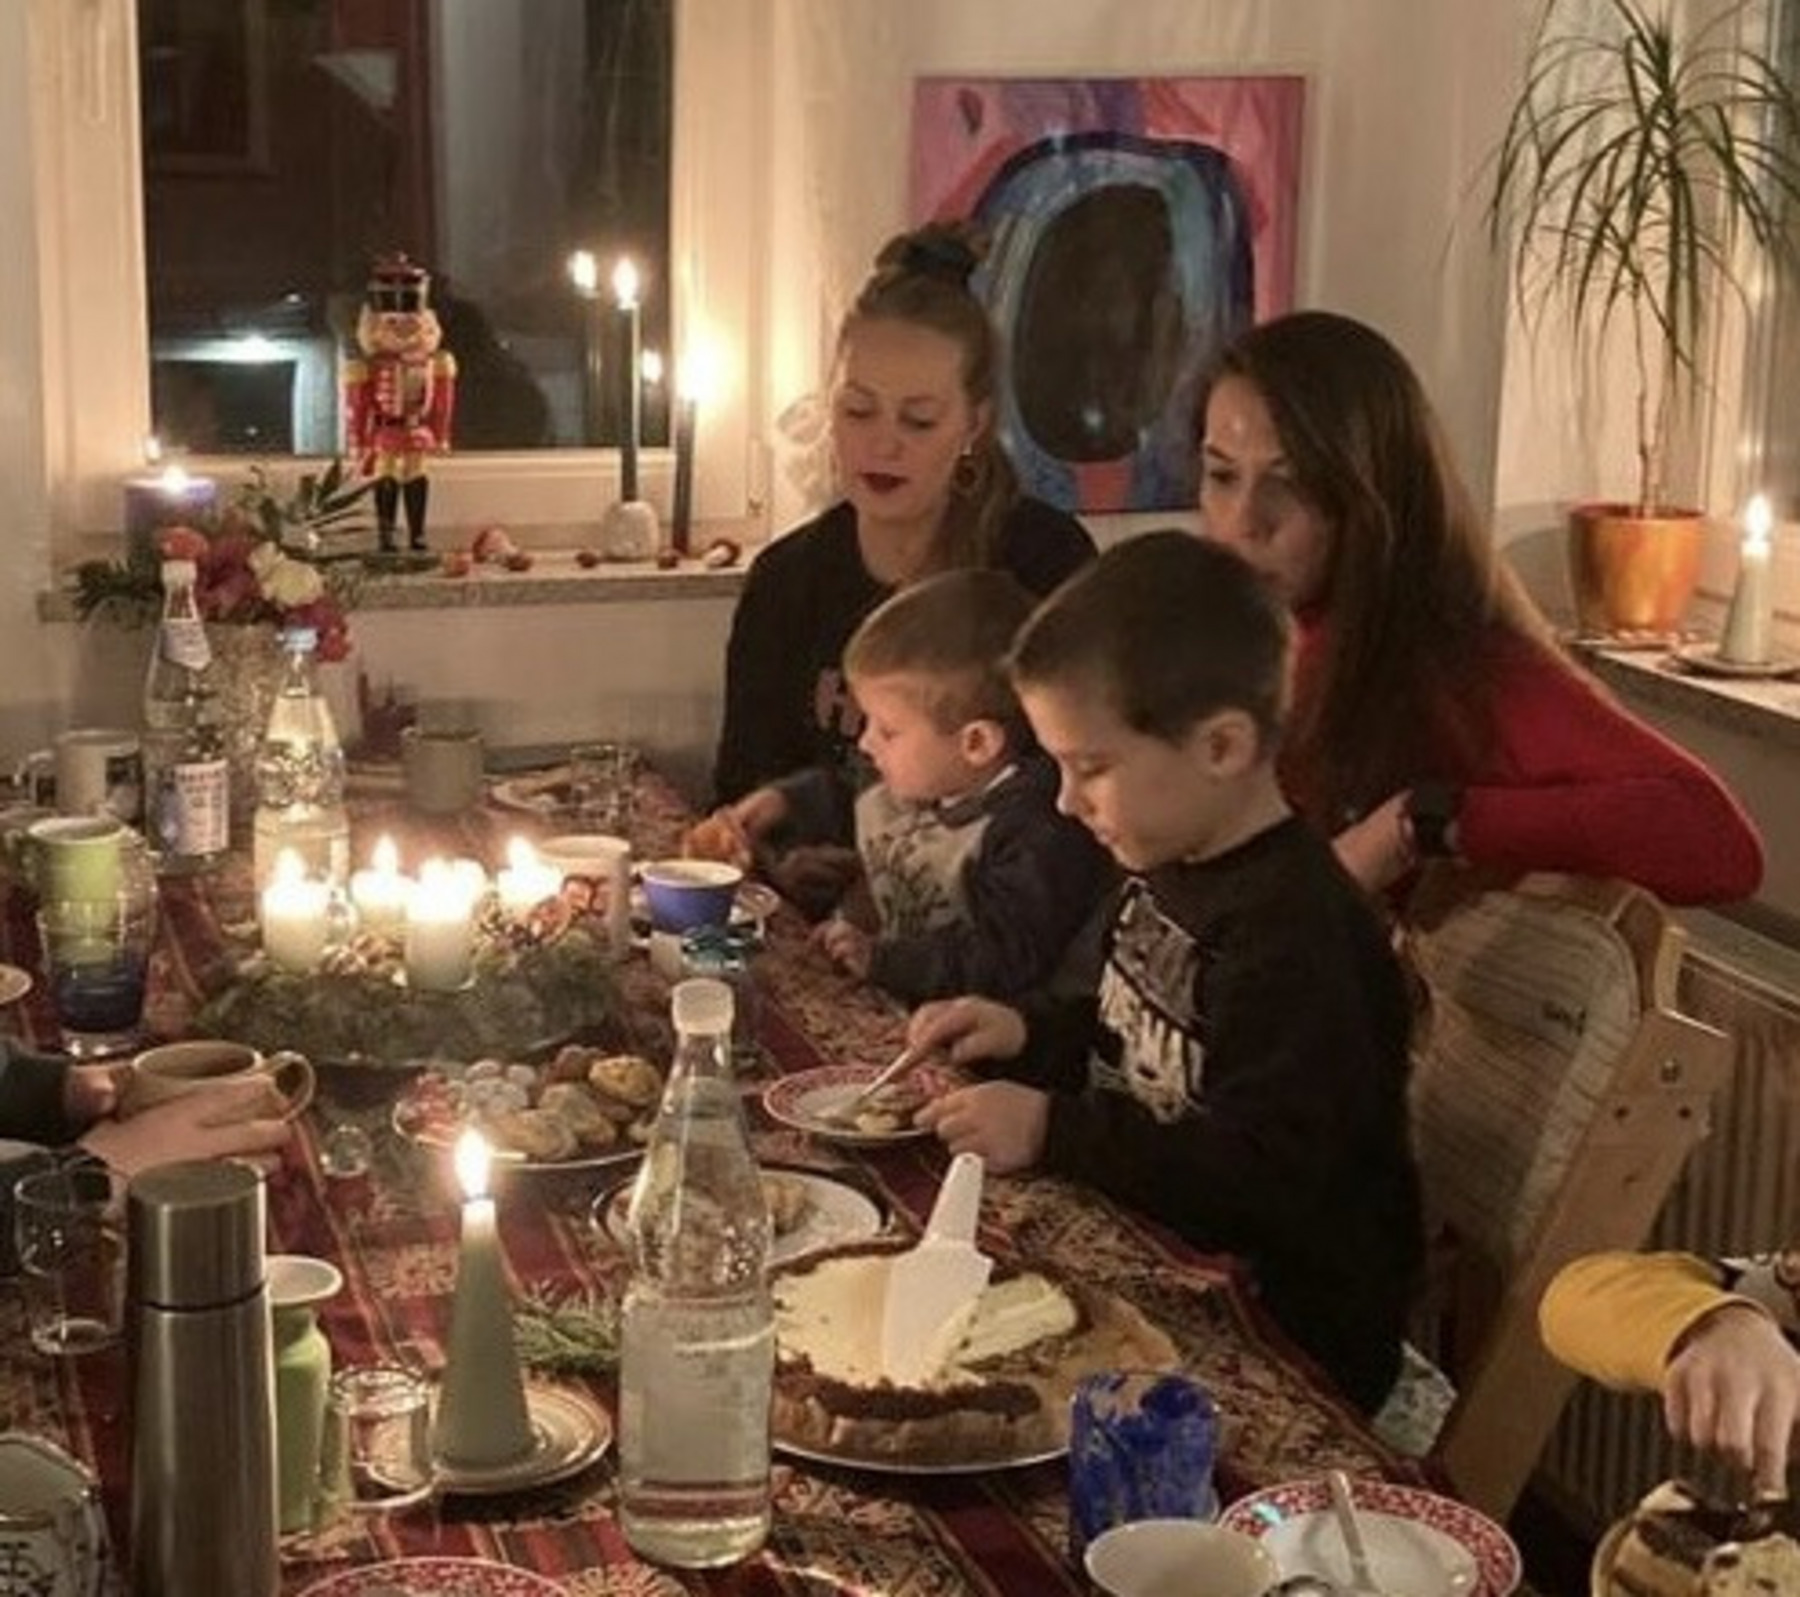 Maren, Hanna und ihre beiden Söhne sitzen an einem Tisch. Dieser ist geschmückt mit einem Adventskranz, Plätzchen und Kuchen sowie anderen Speisen und Getränken.